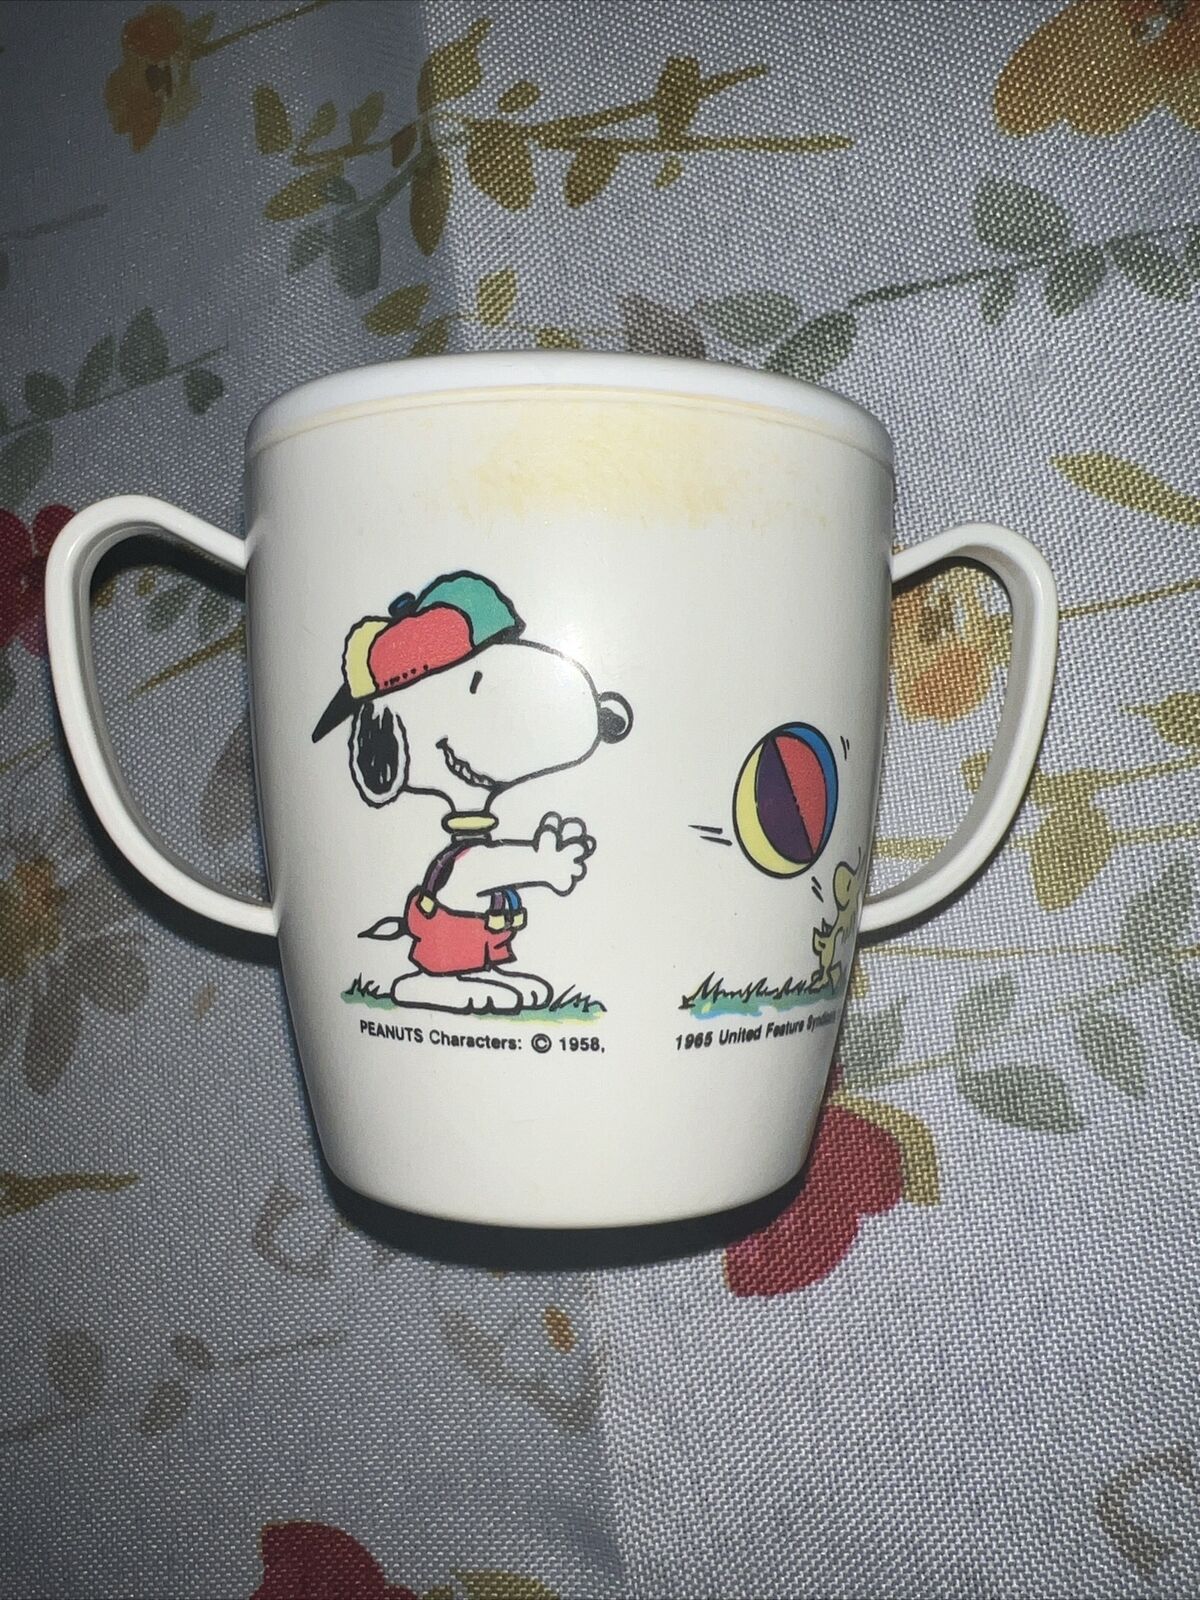 Vintage Peanuts Snoopy & Woodstock Double Handled Cup Danara 1965